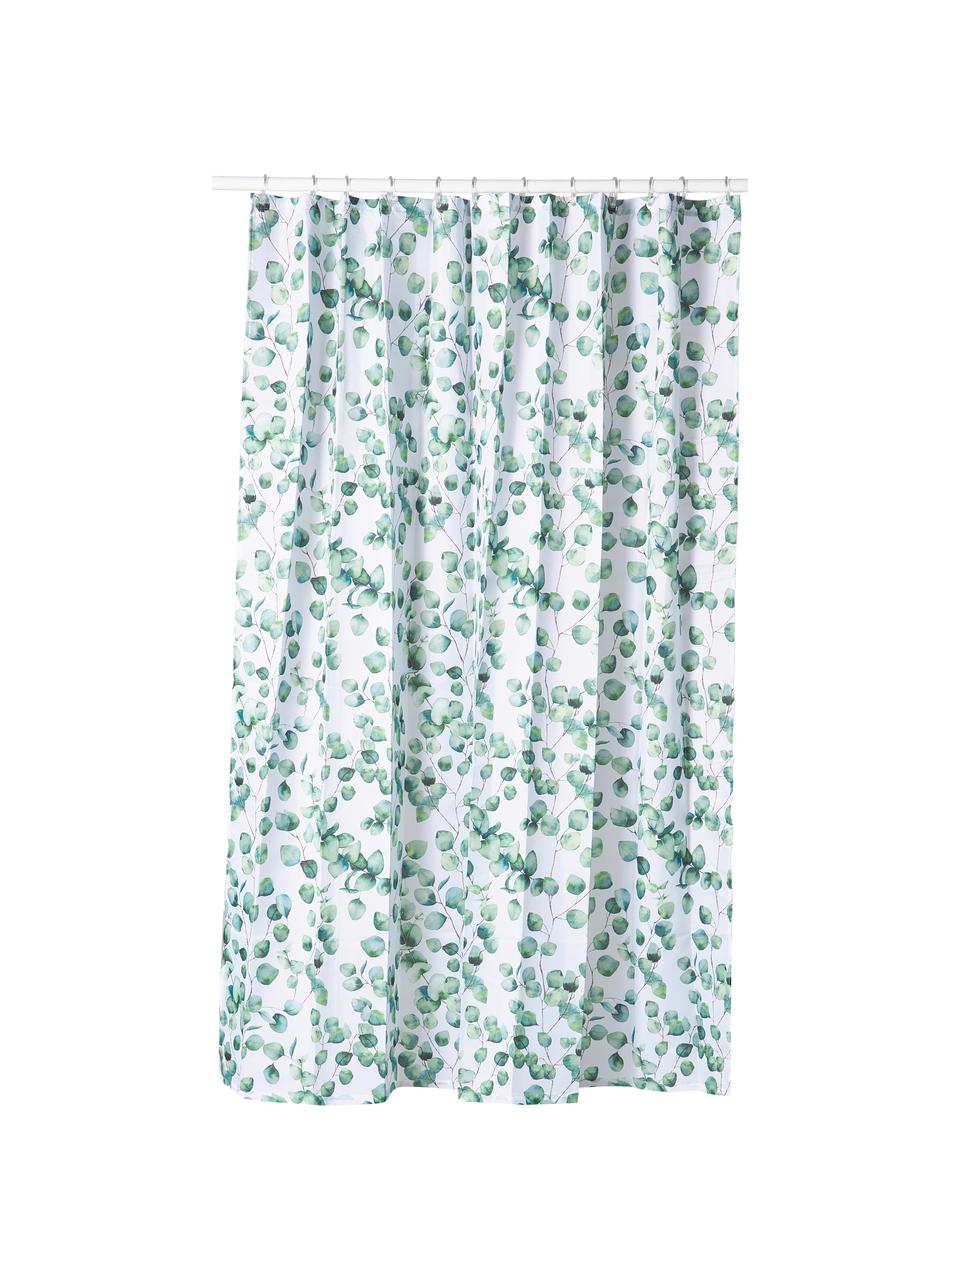 Duschvorhang Ayra mit Pflanzen-Muster, 100% Polyester, Grün, Weiss, B 180 x L 200 cm